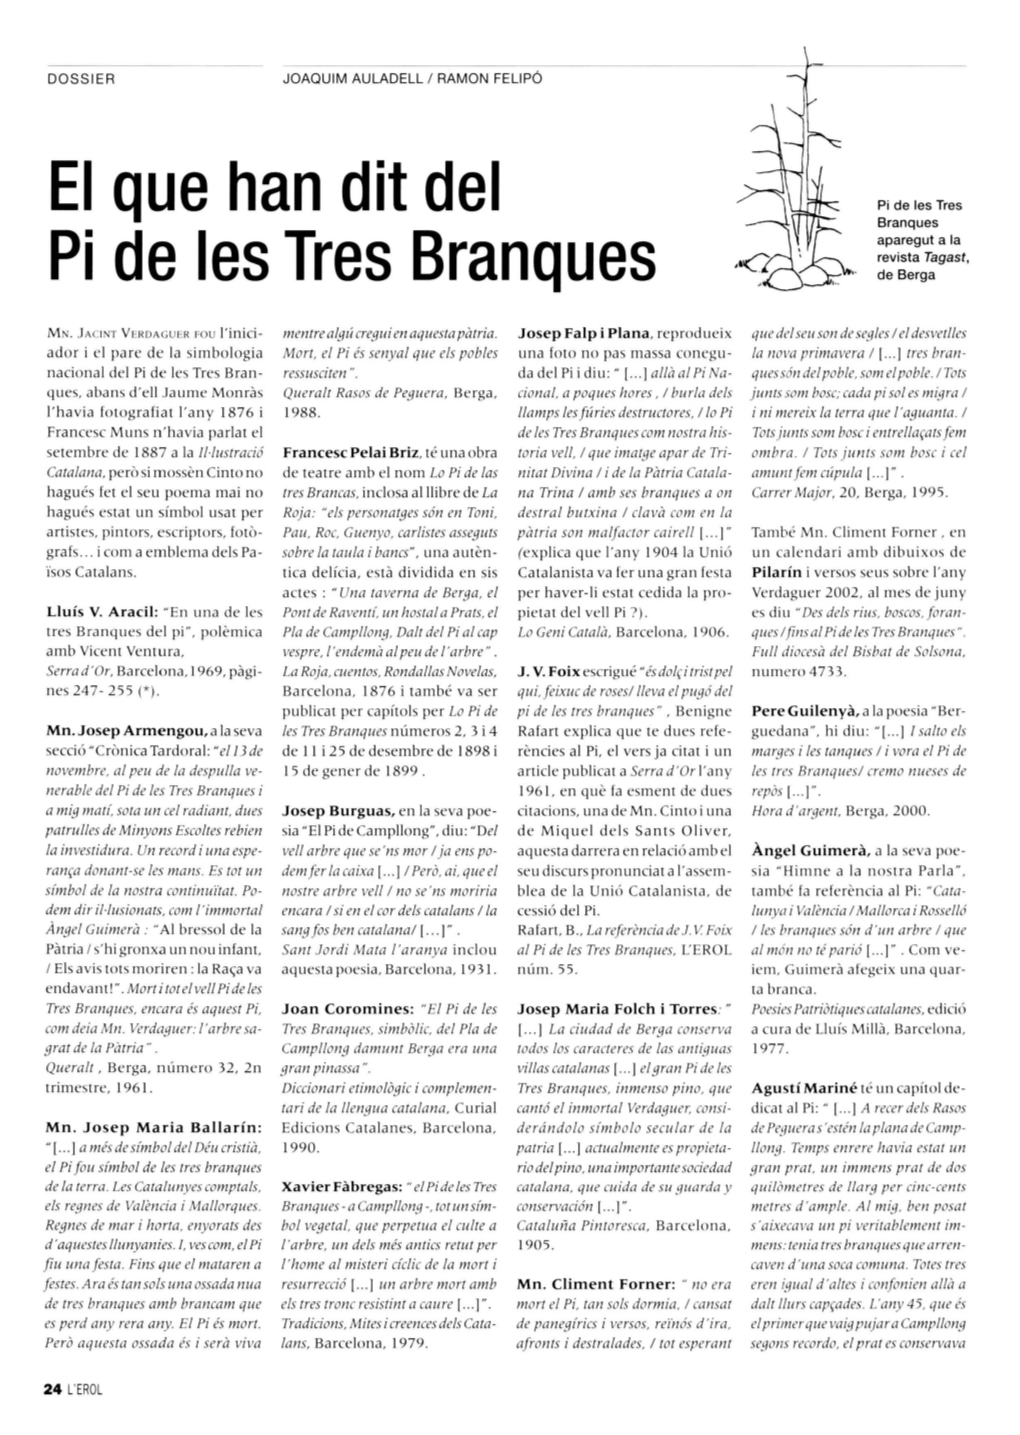 El Que Han Dit Del Pi De Les Tres Branques Aparegut a La Revista Tagast, Pi De Les Tres Branques De Berga